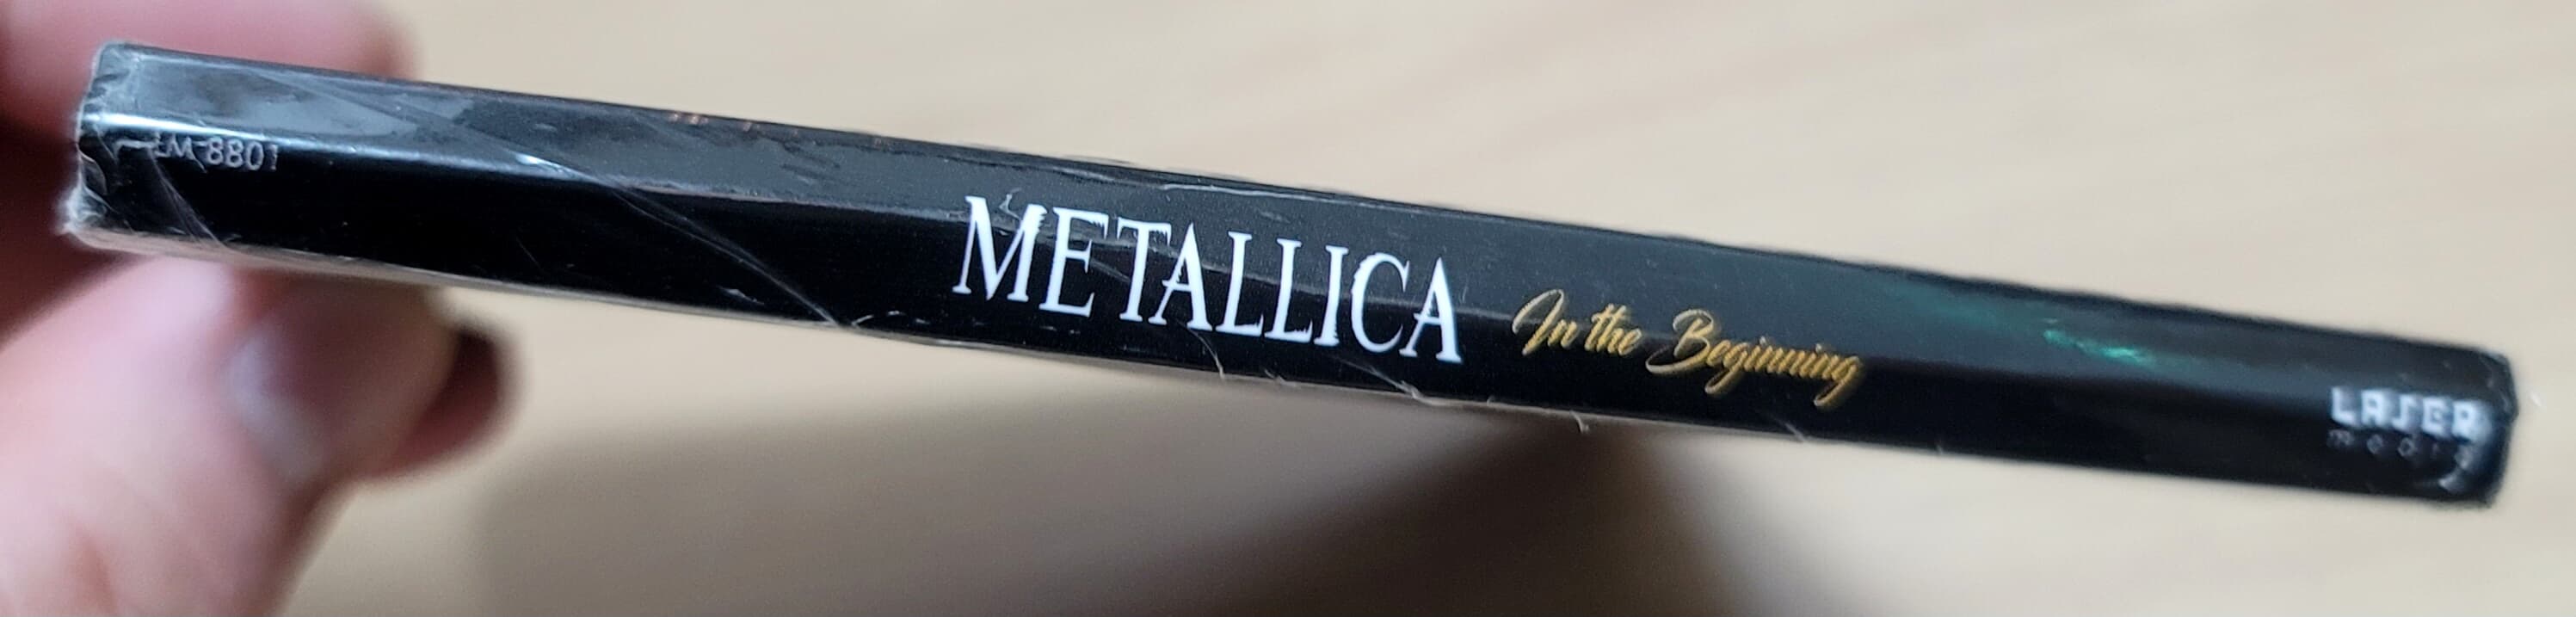 (미개봉 4CD SET 수입) Metallica - IN THE BEGINNING